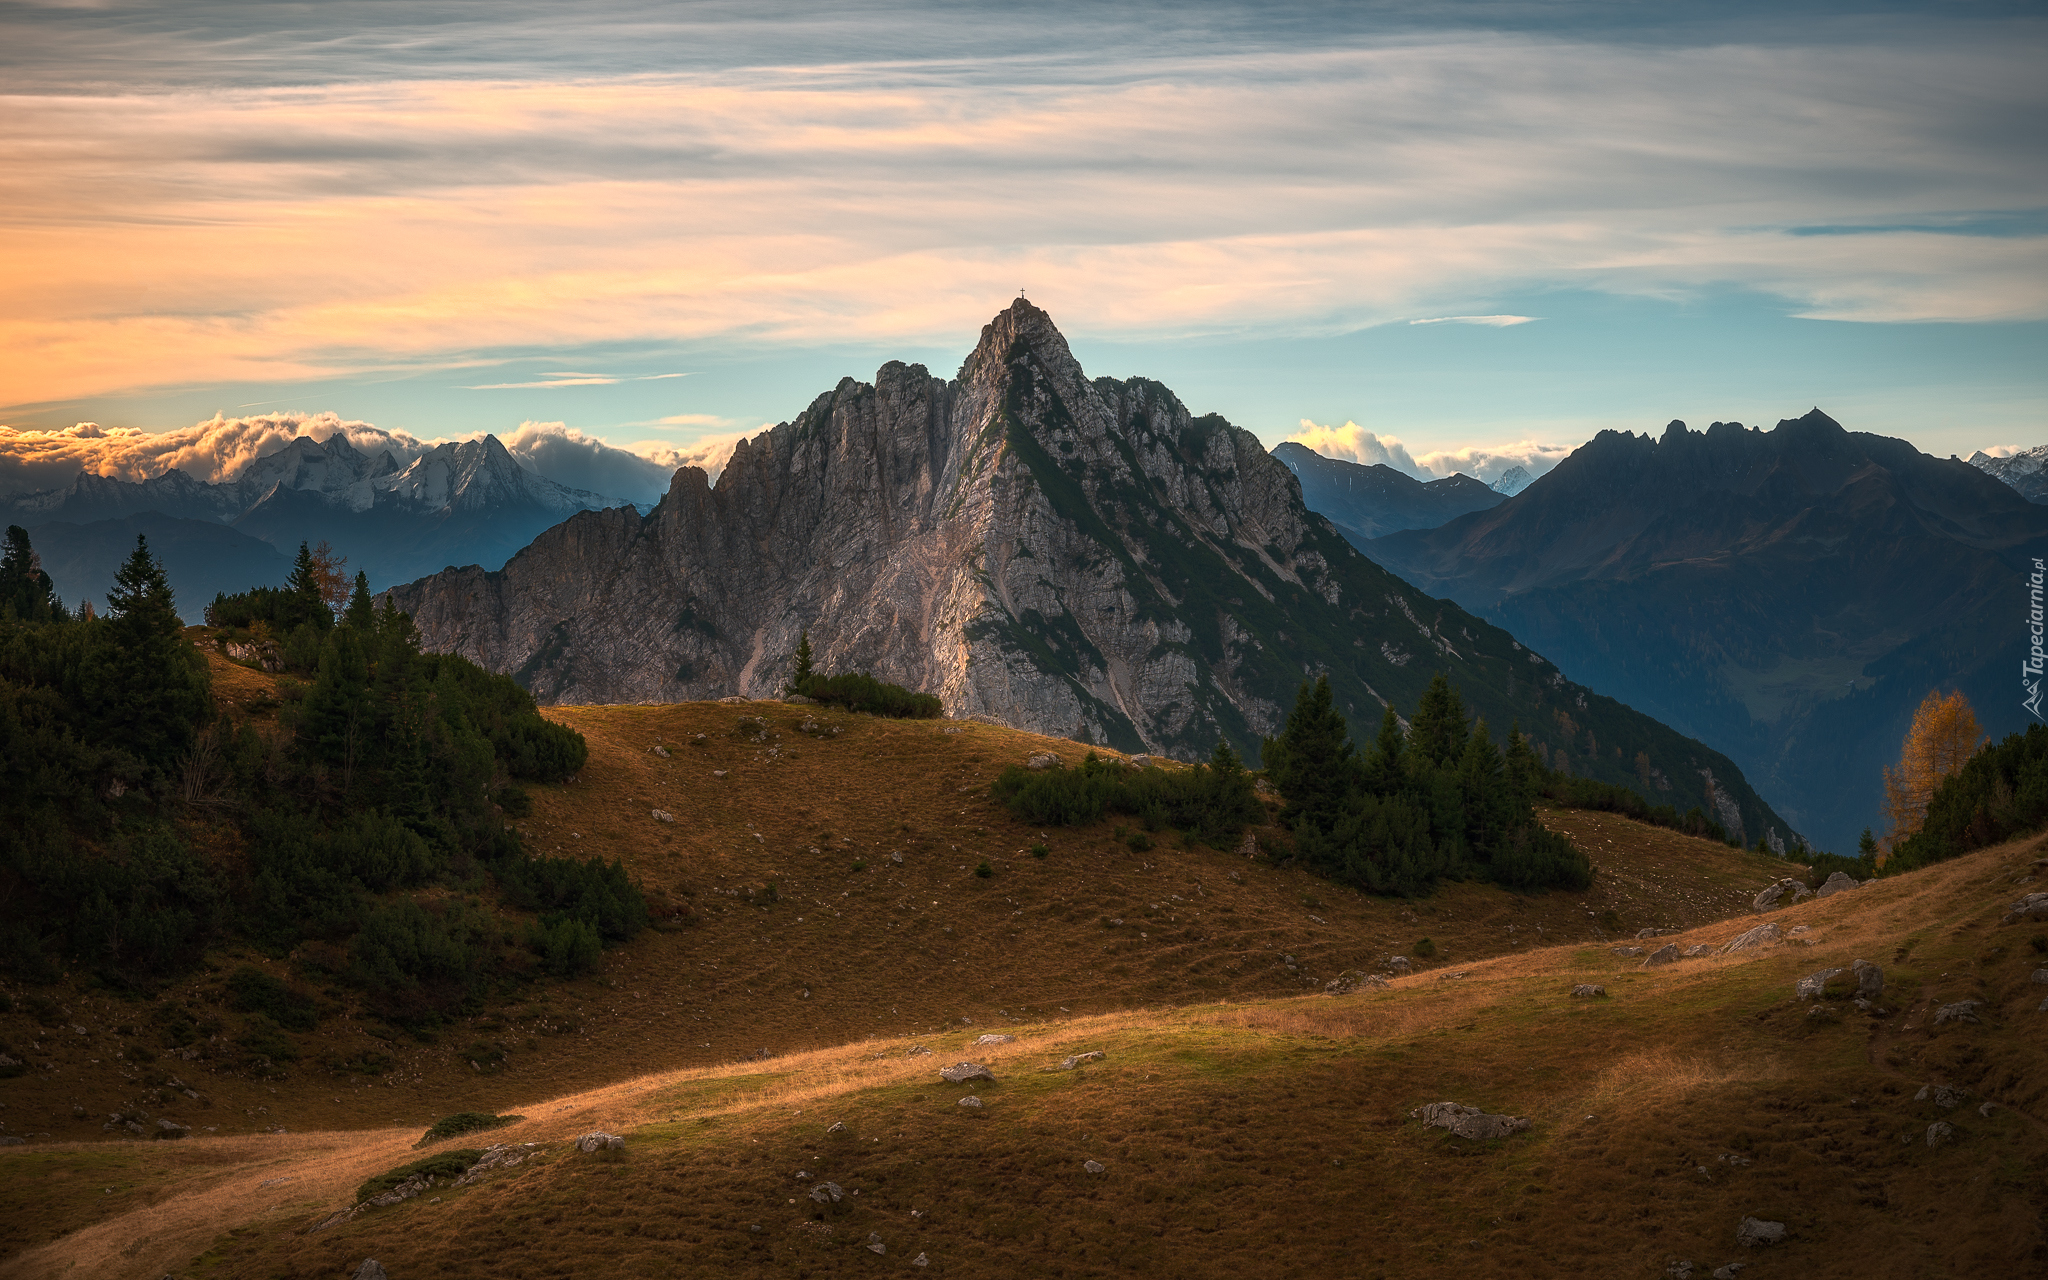 Góry, Alpy, Tyrol, Austria